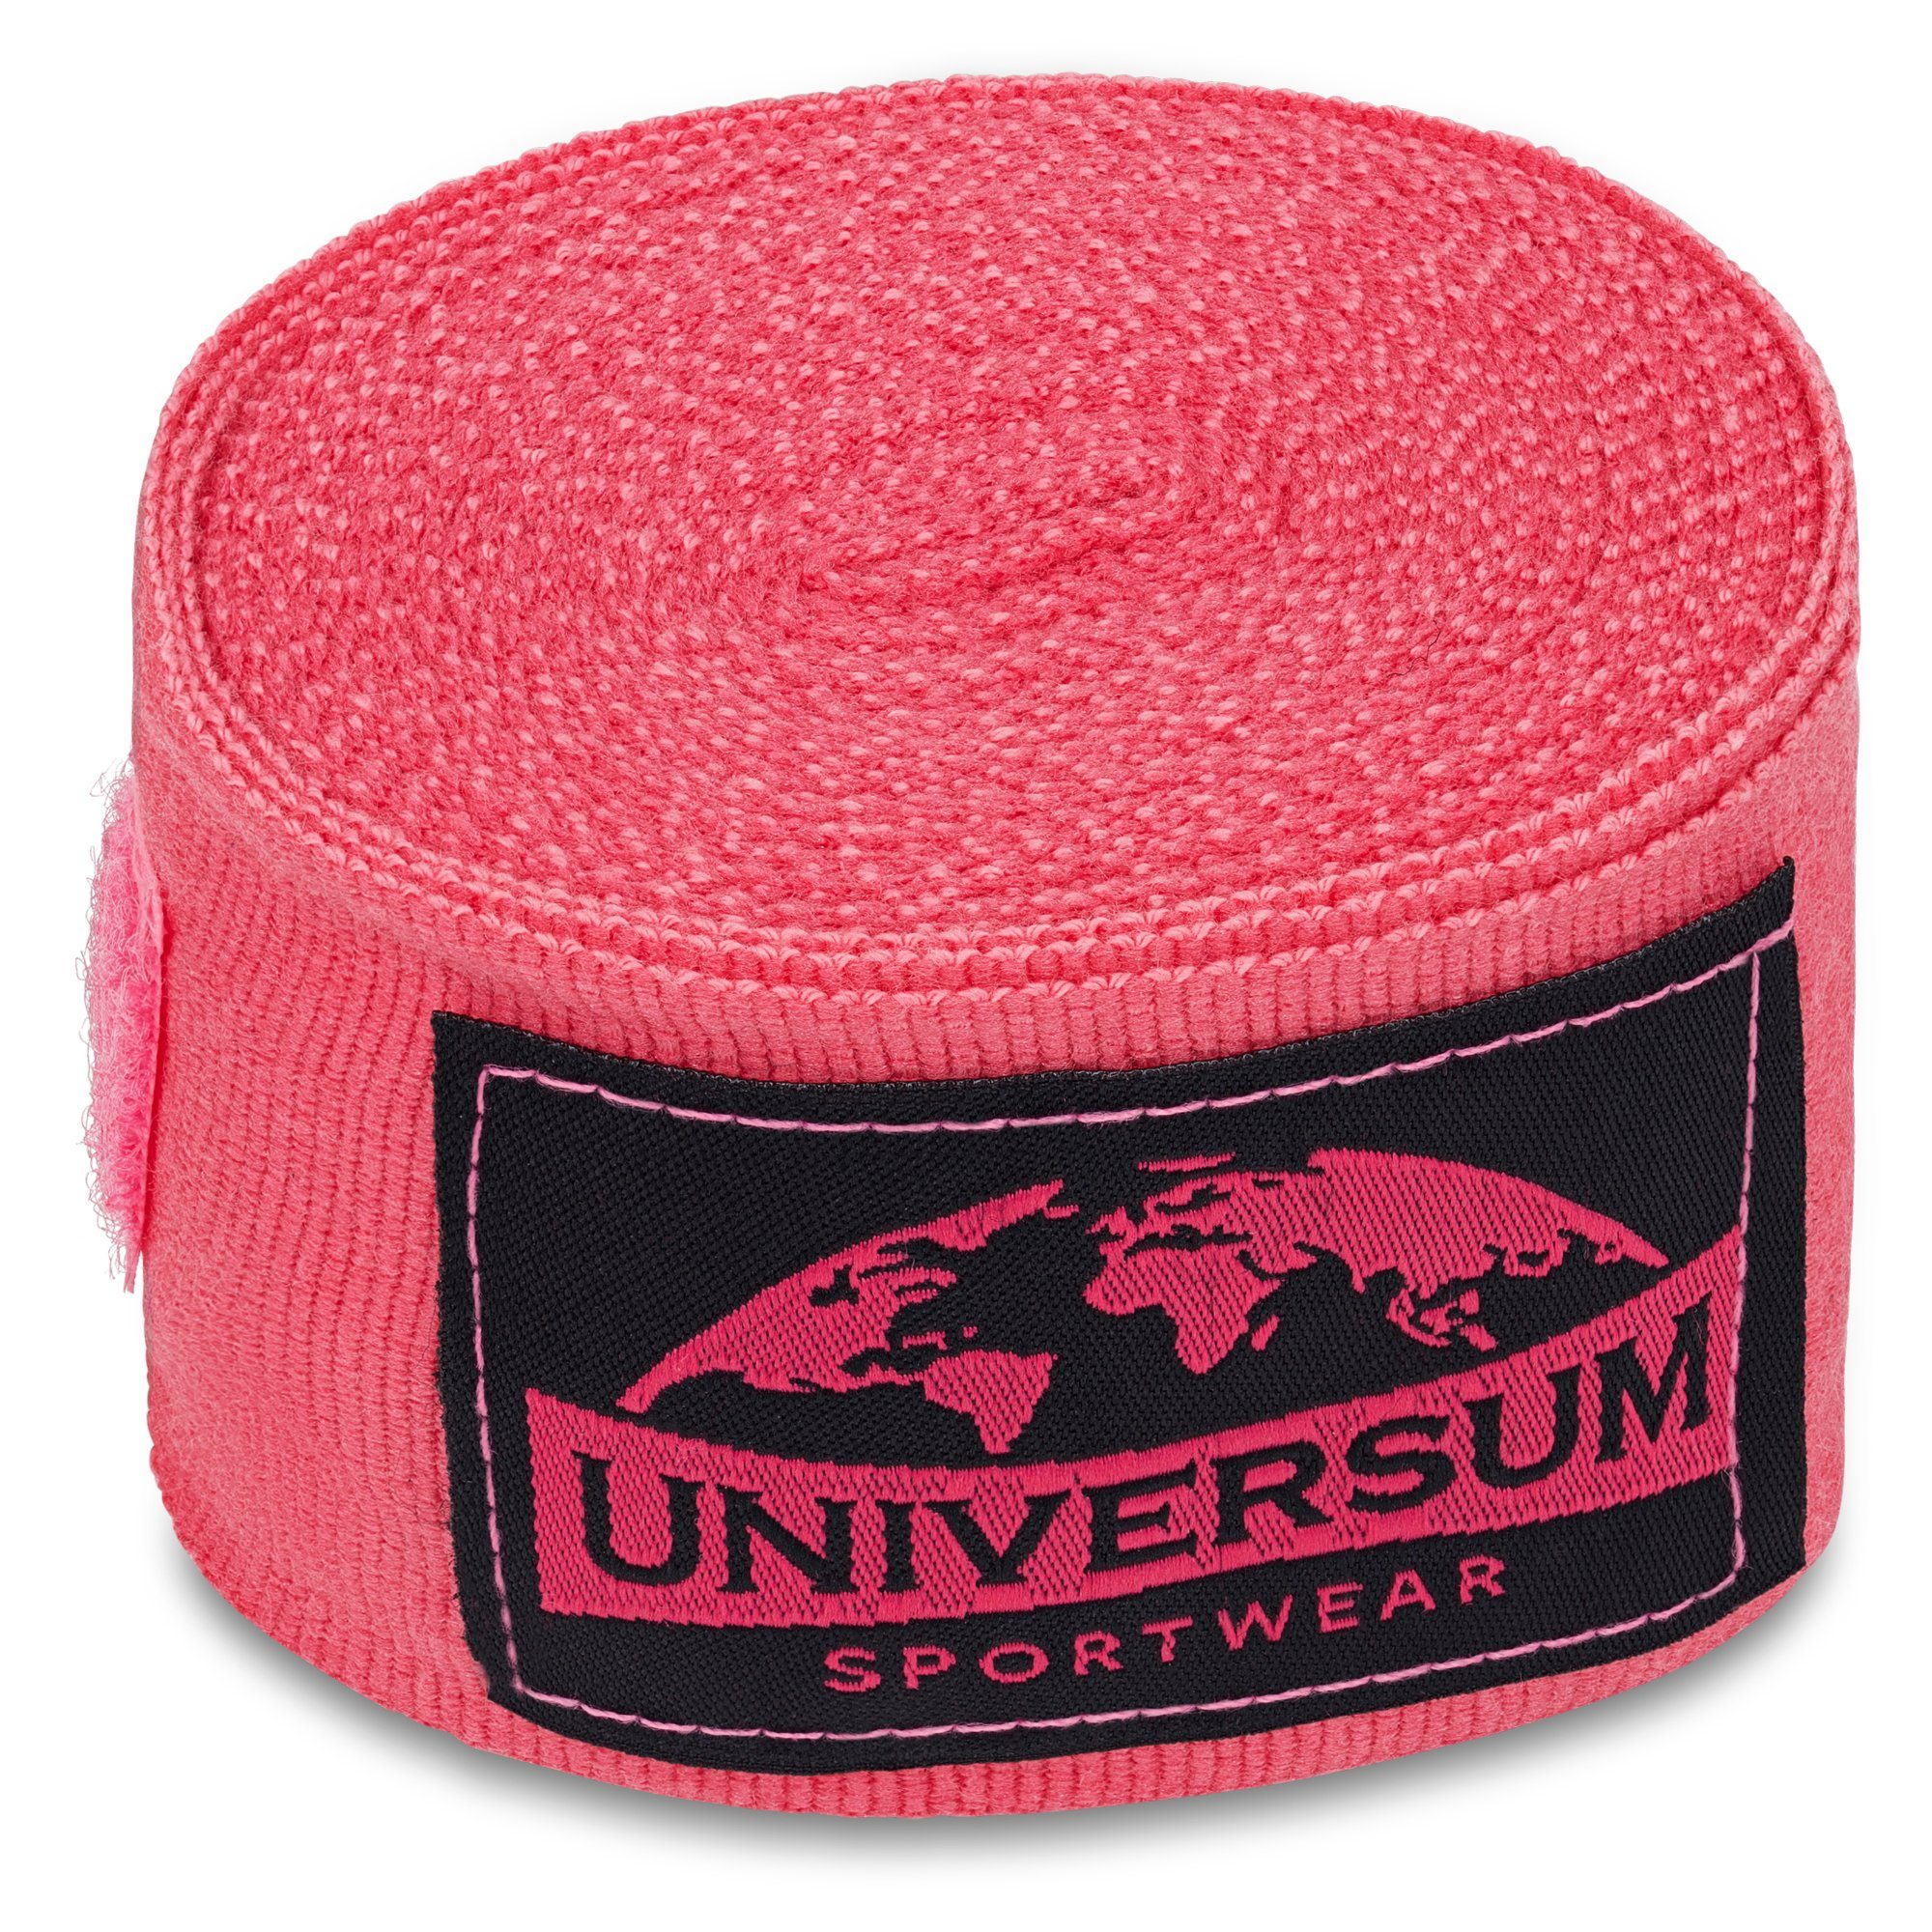 Boxbandagen langen Handgelenk Universum mit Rosa-Schwarz Sportwear Klettverschluss Bandage,